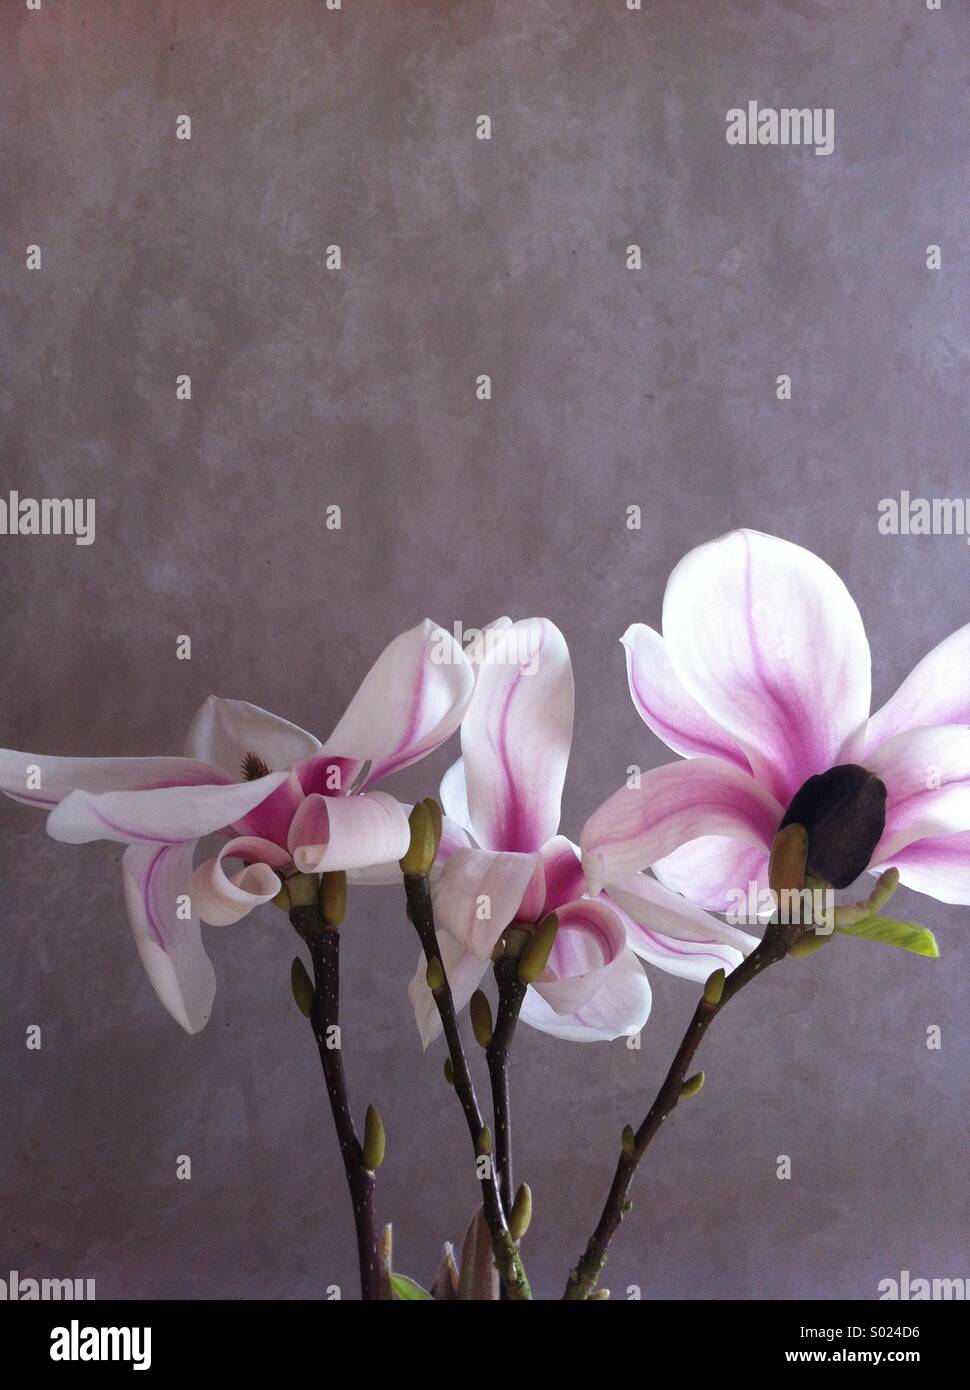 Magnolia fleurit contre toile peinte à la lumière naturelle Banque D'Images